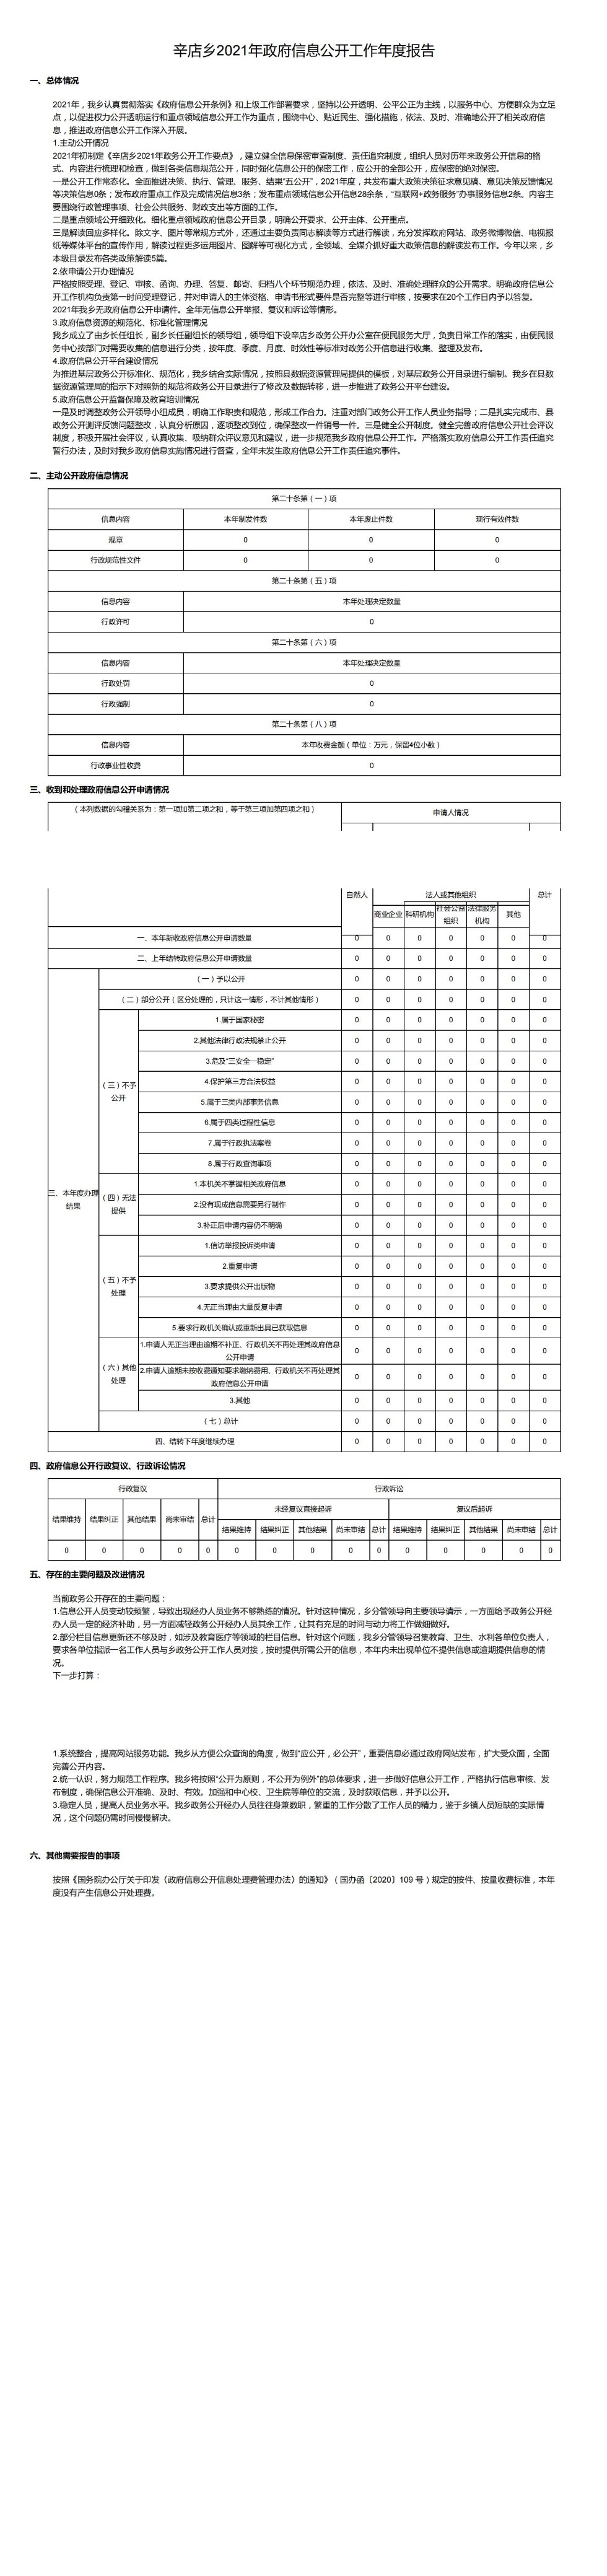 辛店乡2021年政府信息公开工作年度报告_00.jpg